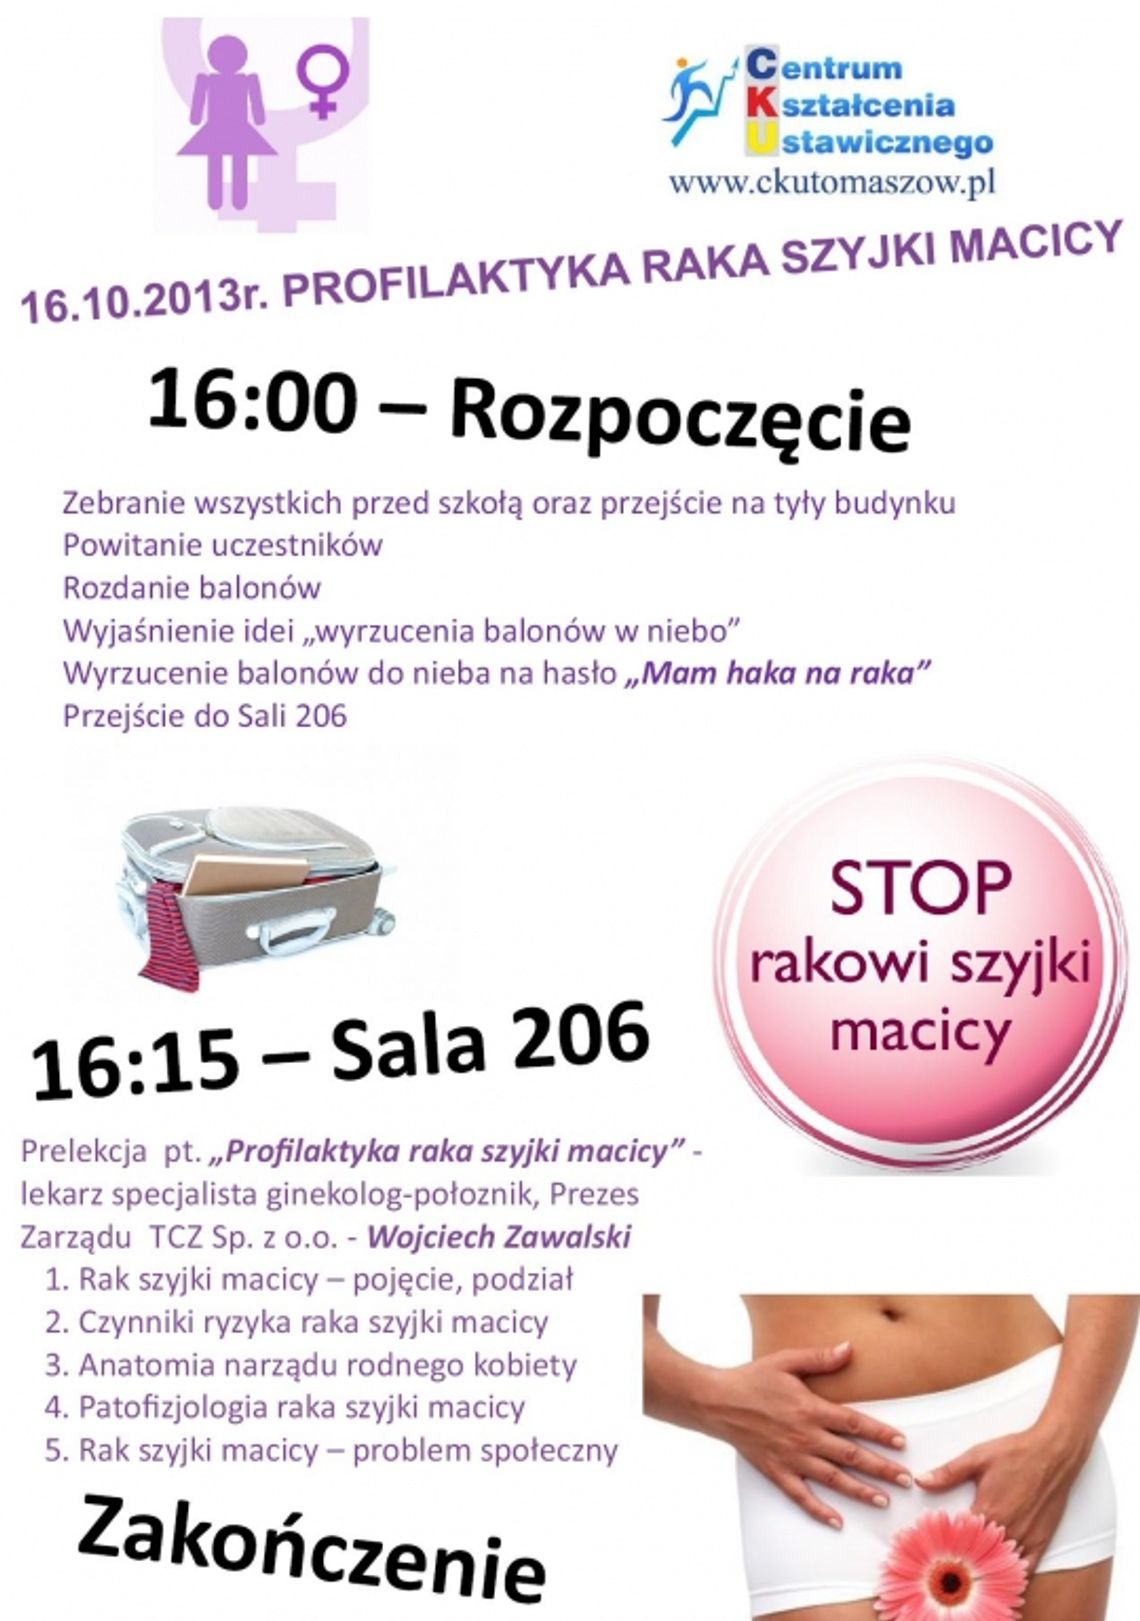 NIE DAJ SIĘ RAKOWI SZYJKI MACICY! – Akcja profilaktyczna Centrum Kształcenia Ustawicznego w Tomaszowie Mazowieckim